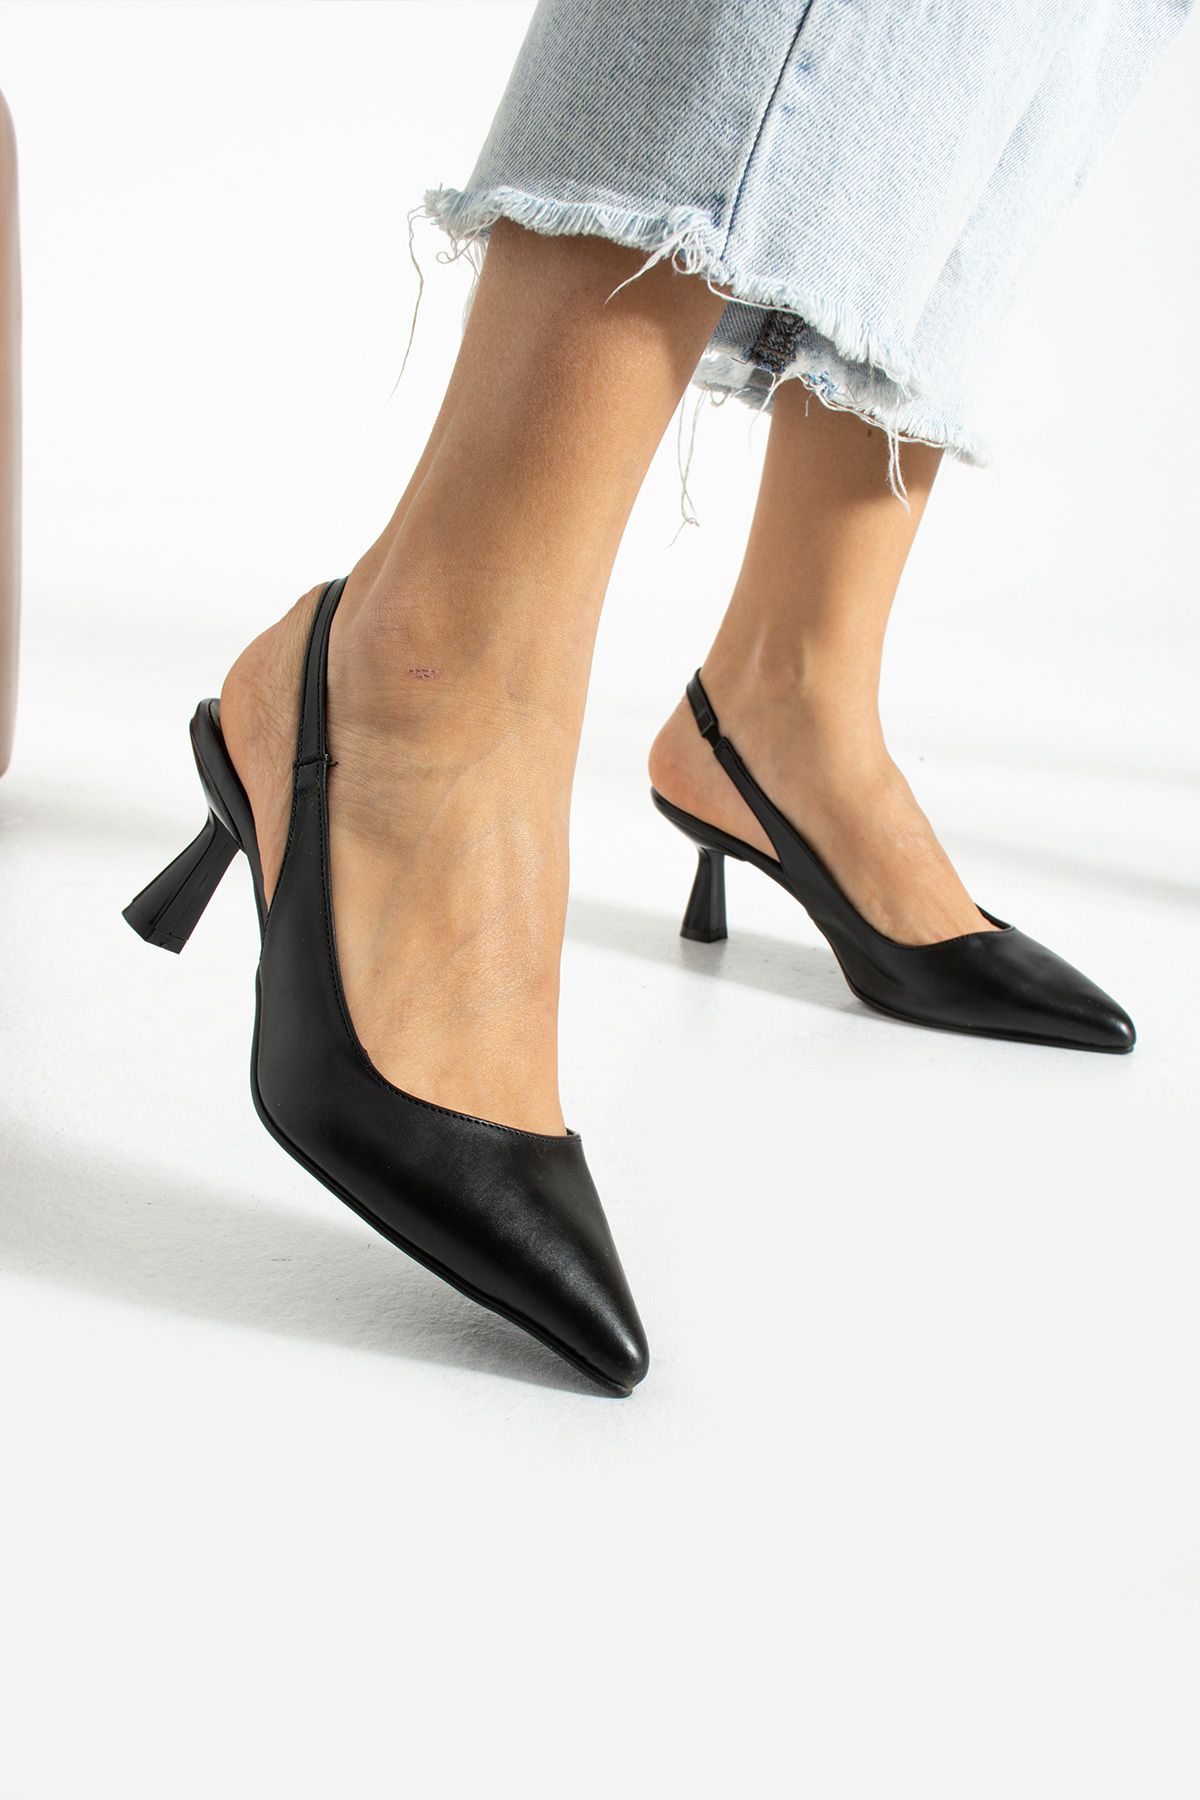 İnan Ayakkabı Kadin Siyah Topuklu Ayakkabı (7 Cm Topuk )